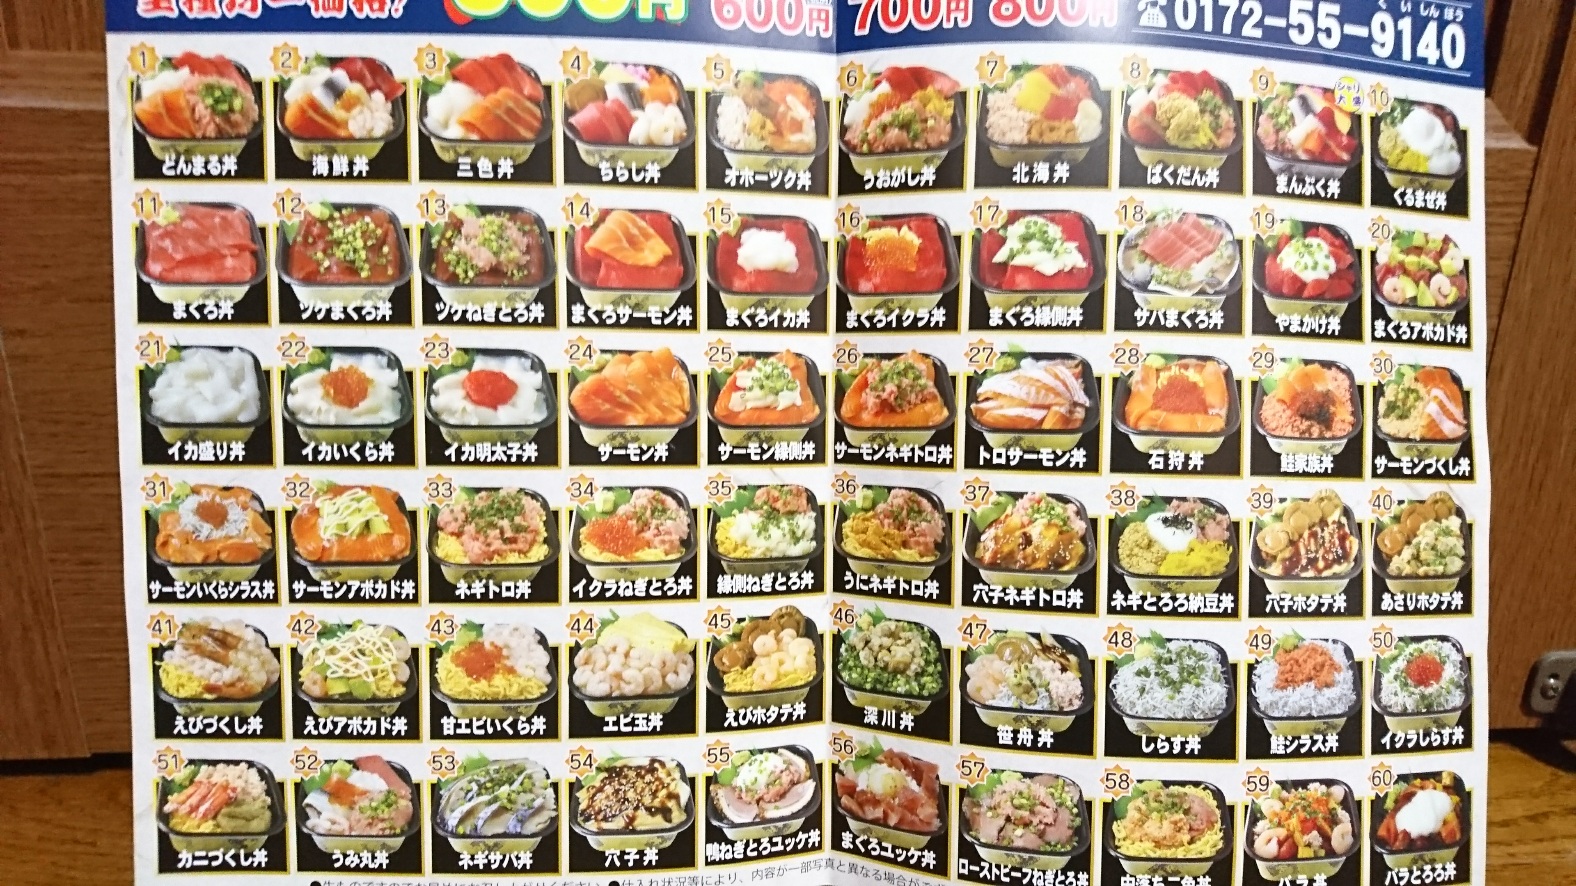 3 21オープン 海鮮丼テイクアウト店 丼丸 えび 青森県 弘前市 グルメ Locolle ローコレ